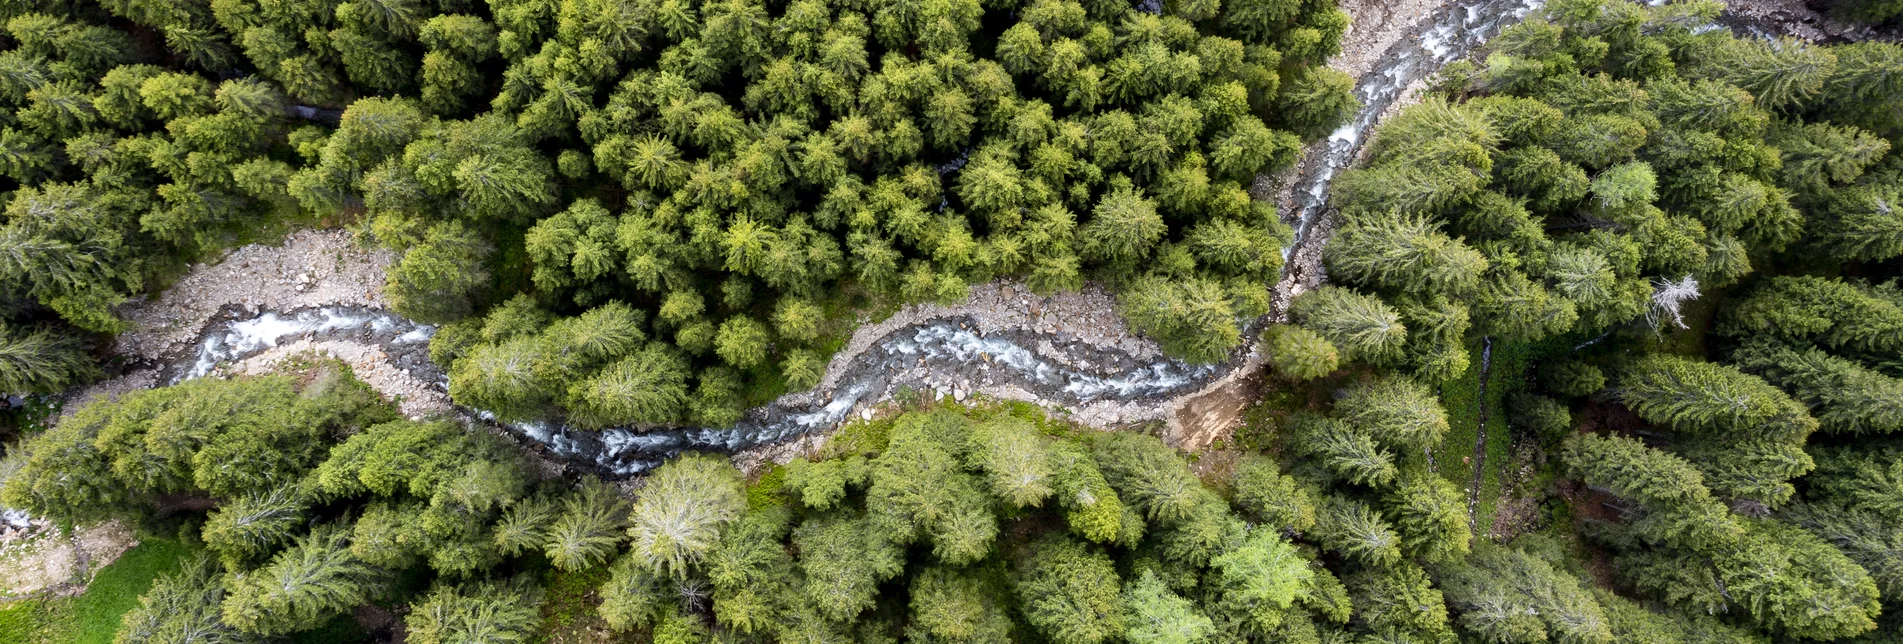 "Schmelzbach" schlingt sich durch steirische Wälder | © Steiermark Tourismus / Tom Lamm | Tom Lamm